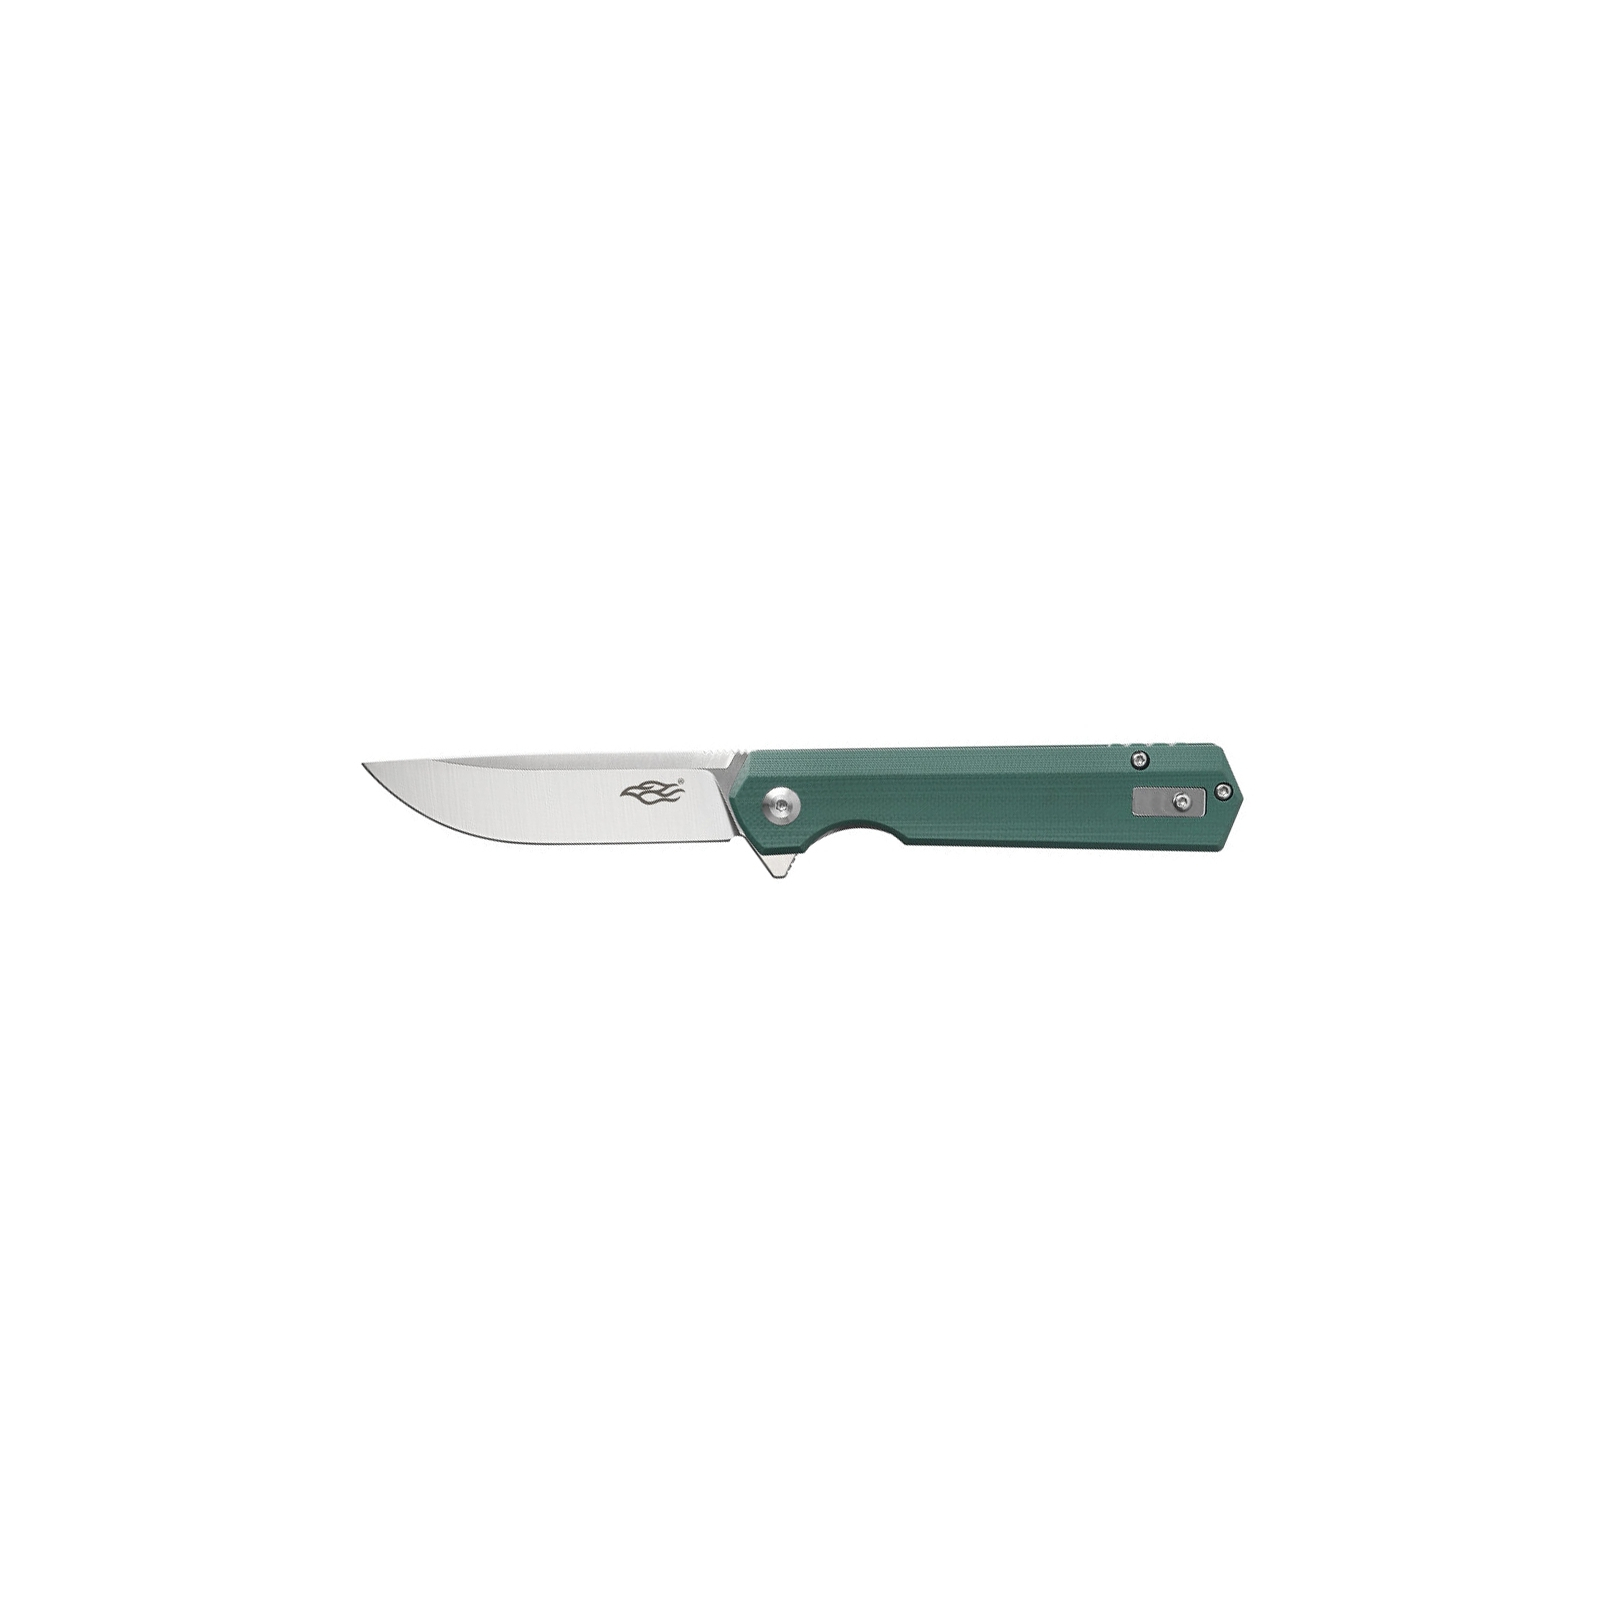 Нож Firebird FH11S-GY